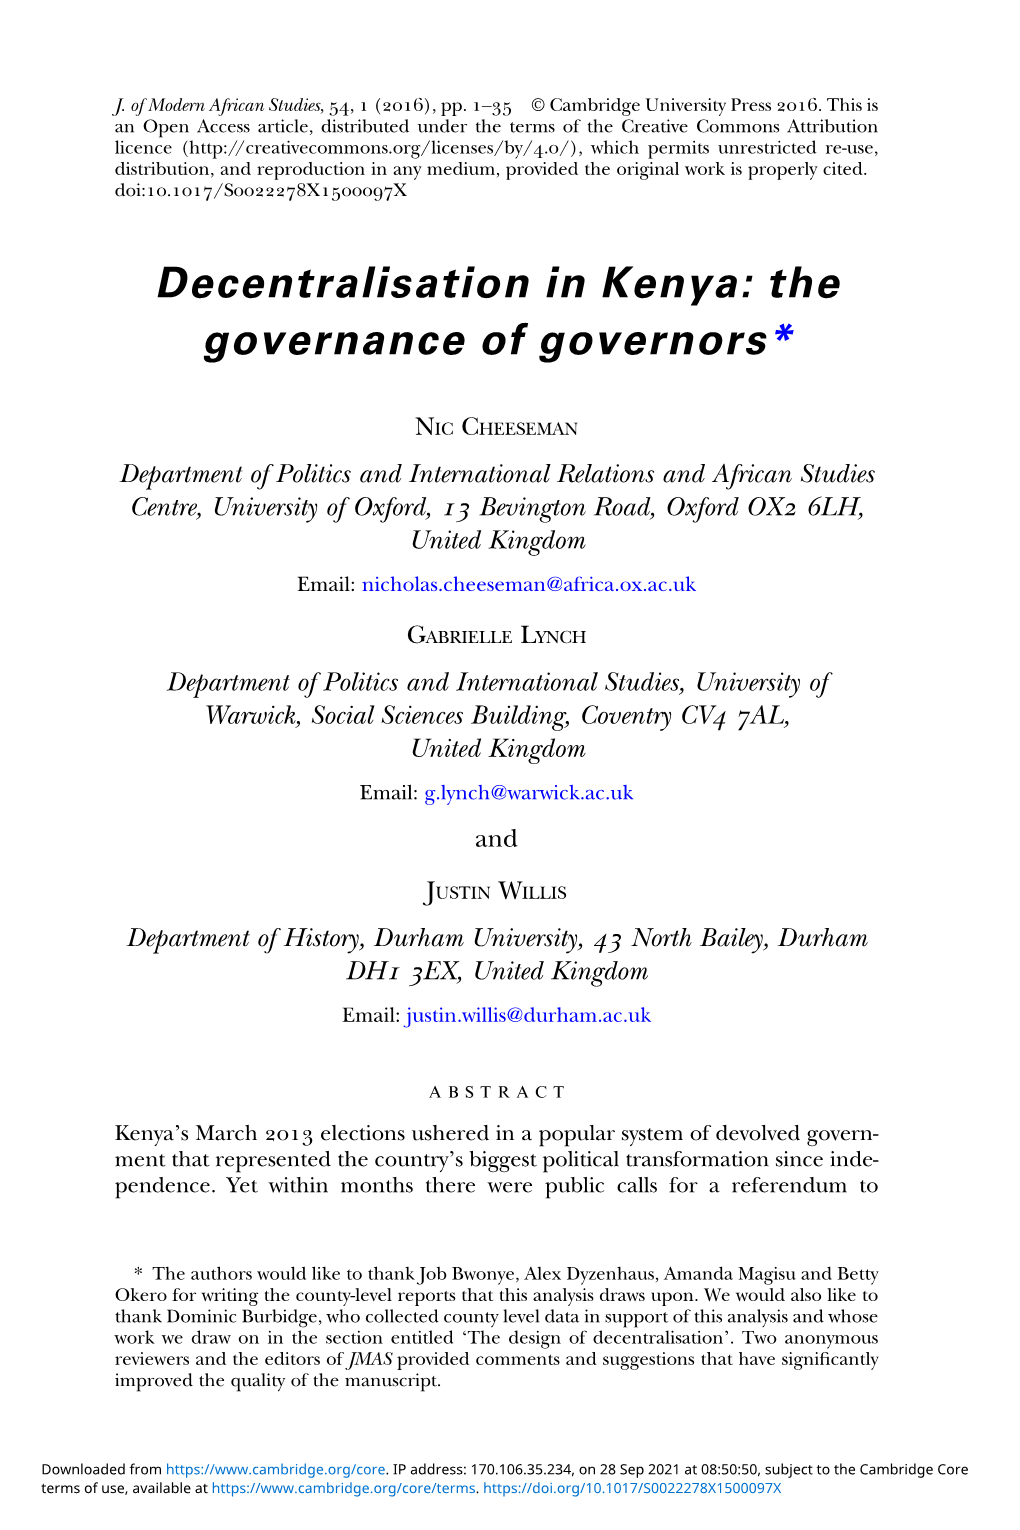 Decentralisation in Kenya: the Governance of Governors*